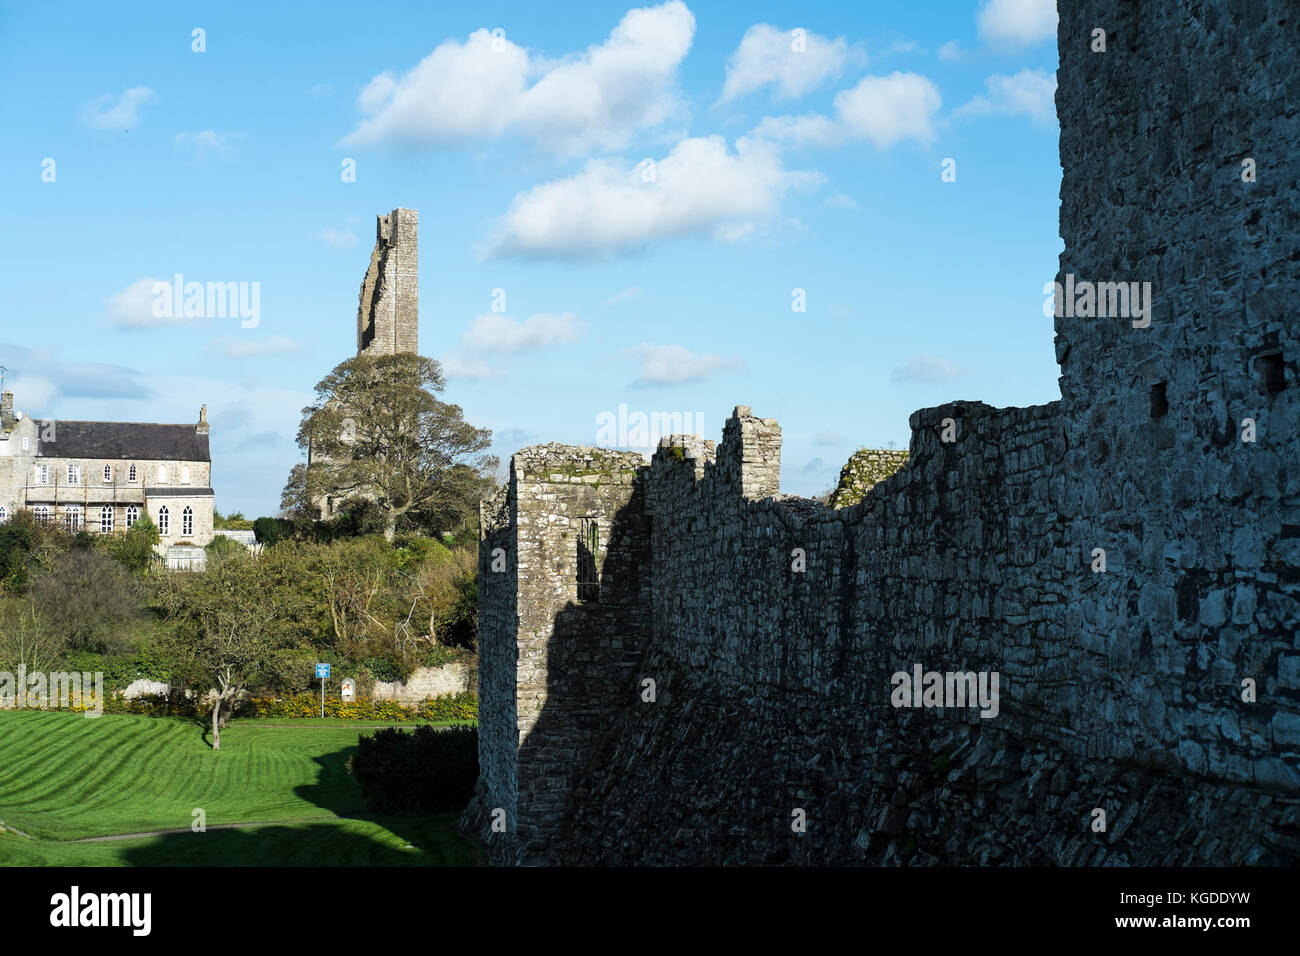 Der gelbe Kirchturm von St Mary's Abbey Trim Castle in der Grafschaft Meath in der Nähe von Dublin, Republik Irland, Drehort für den Film braveheart mit Mel Gibson Stockfoto